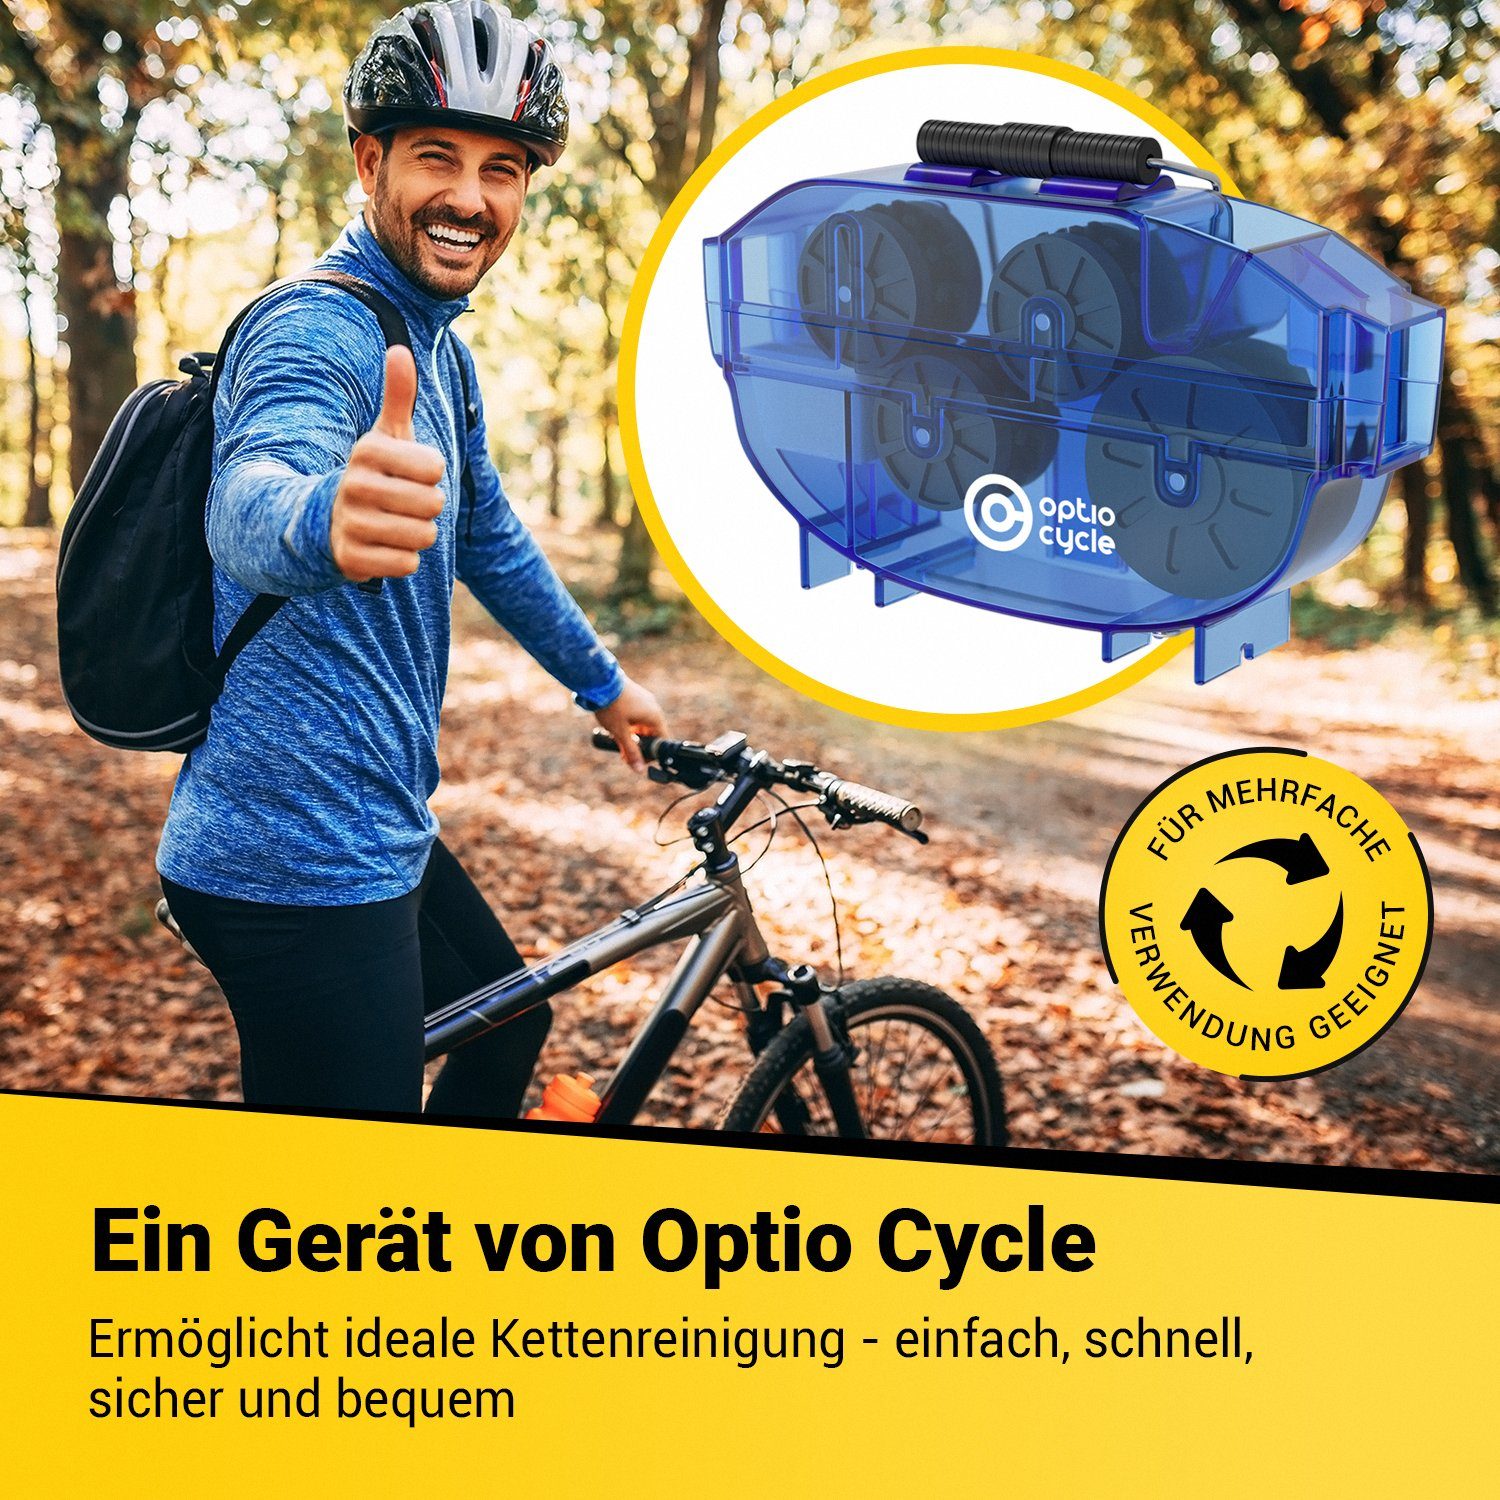 Optio Cylce Fahrradketten Kettenreinigungsgerät Fahrrad, Kettenreiniger Fahrradkette